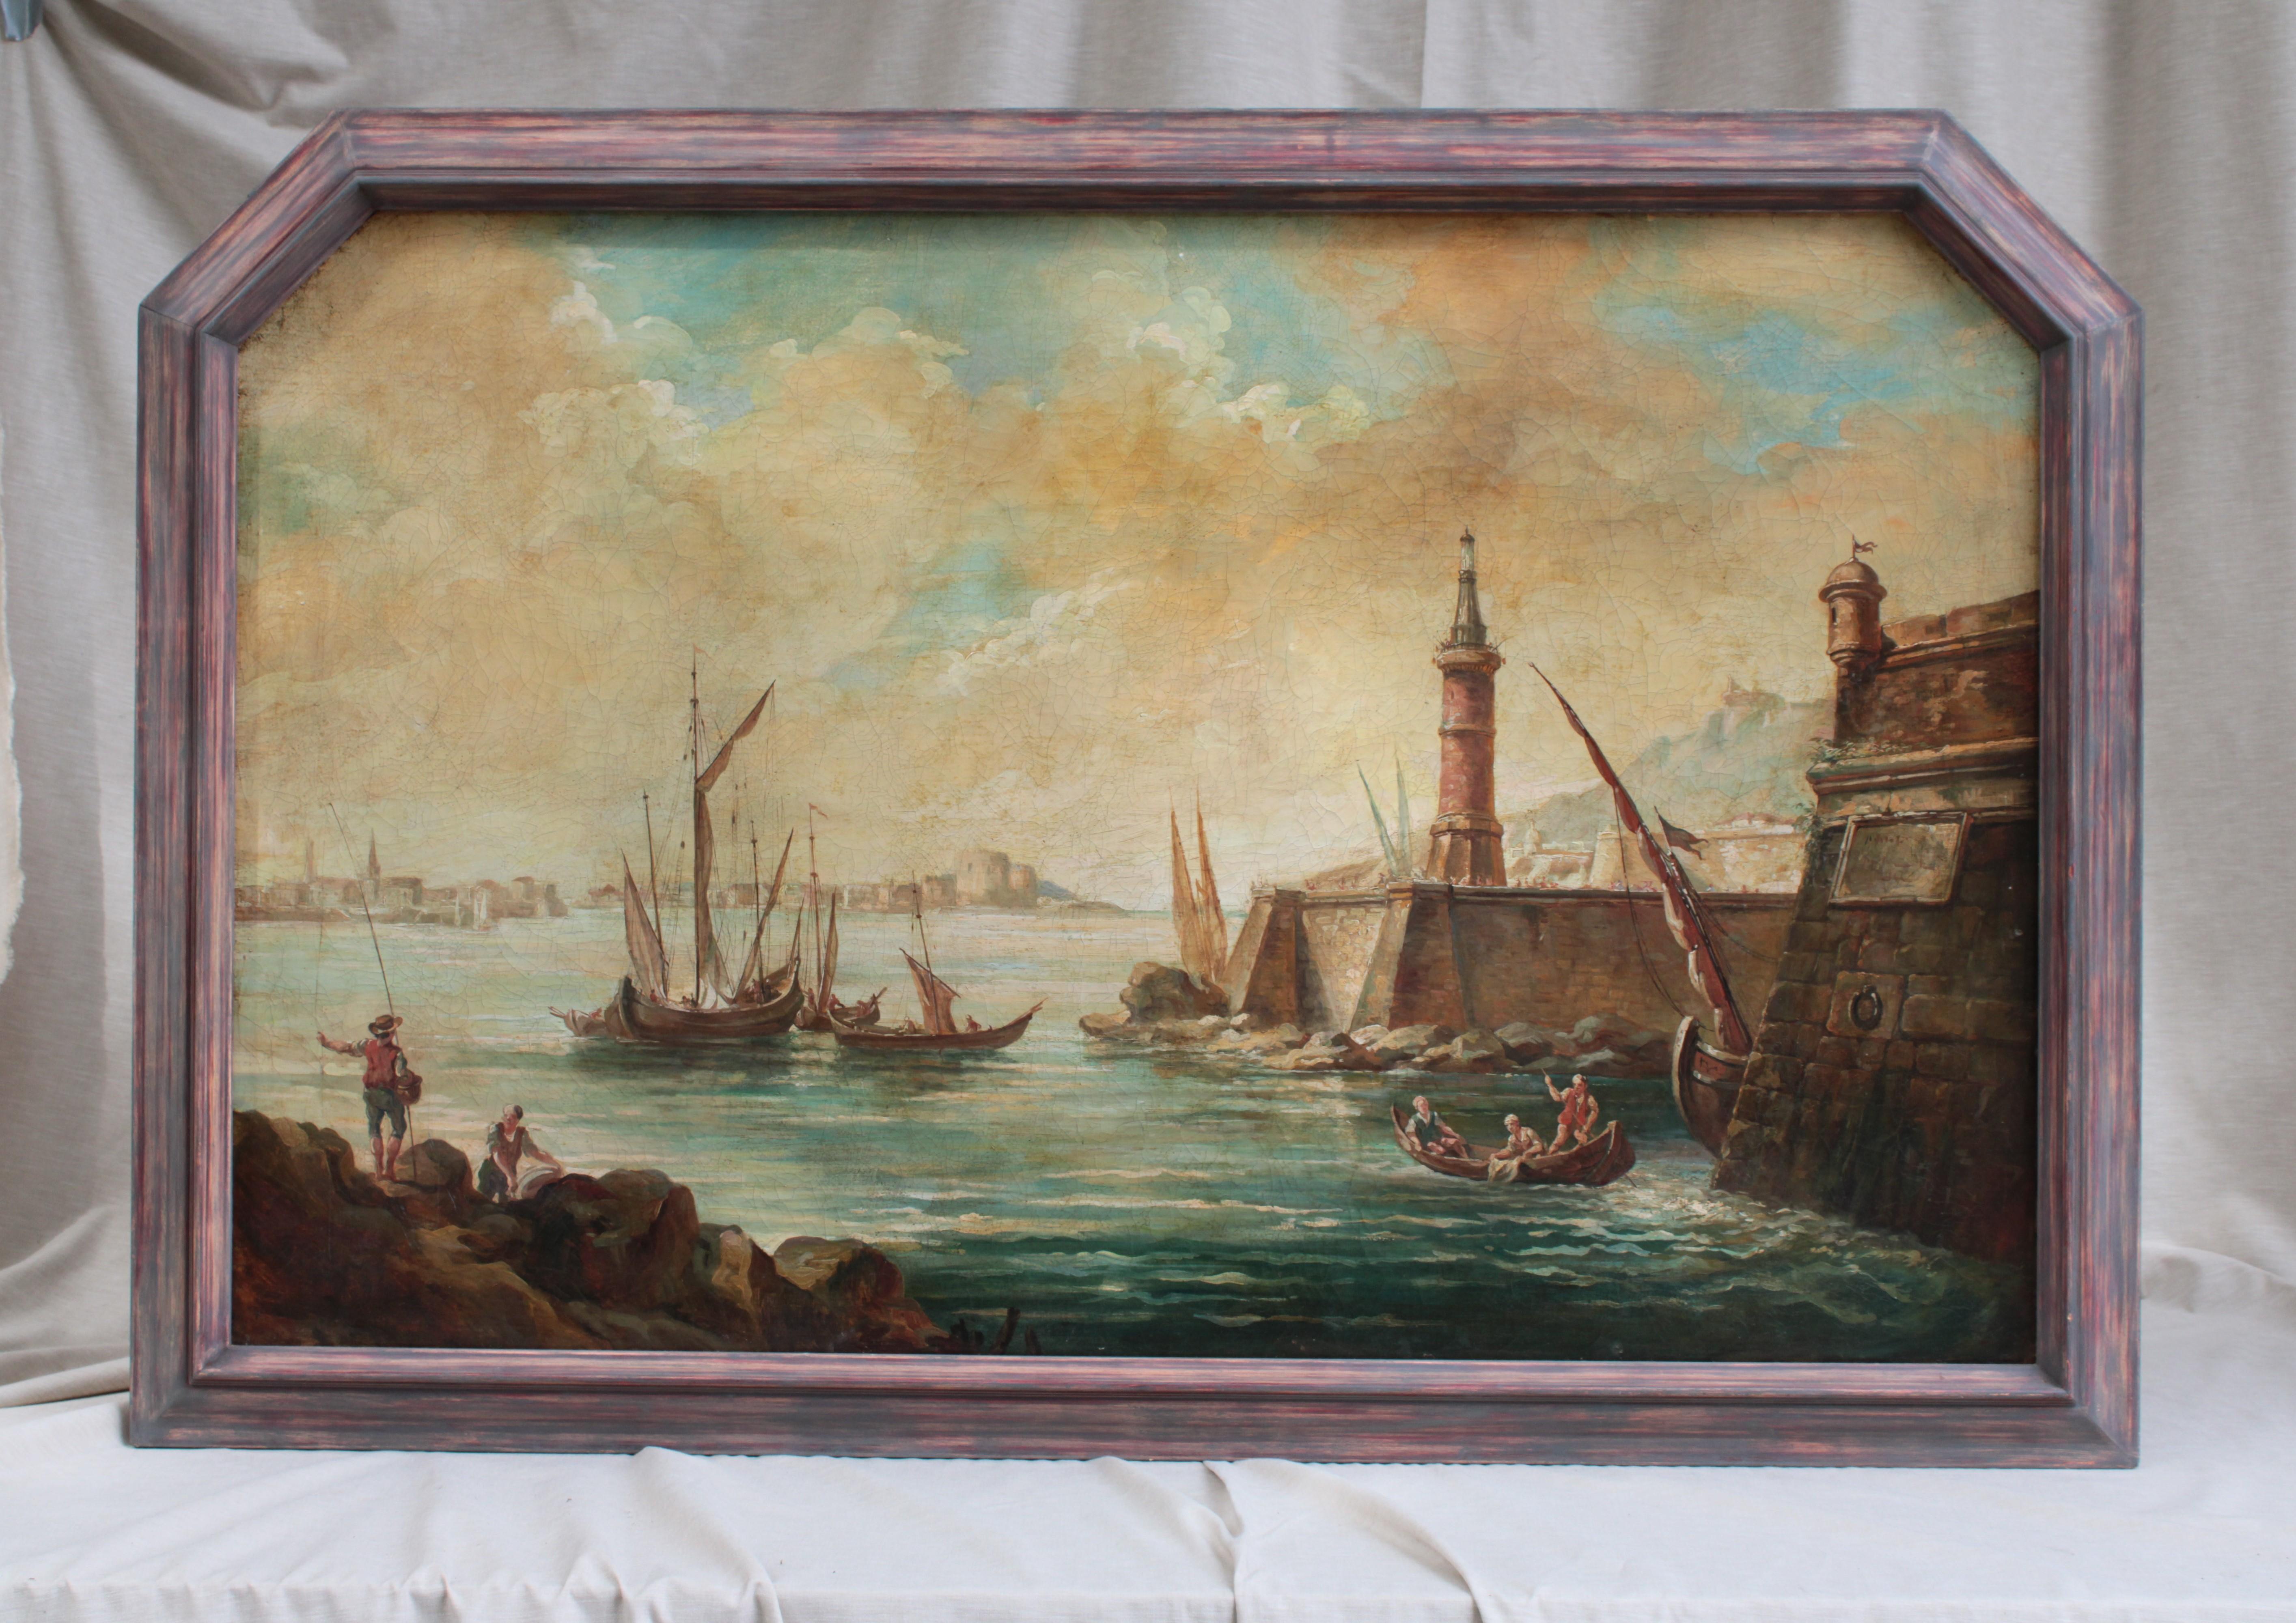 Une huile sur toile représentant un port avec des bateaux, à Marseille, et attribuée à l'école de Joseph Vernet. France, 18e siècle.

Joseph Vernet était un éminent artiste français du XVIIIe siècle, spécialisé dans la représentation de scènes